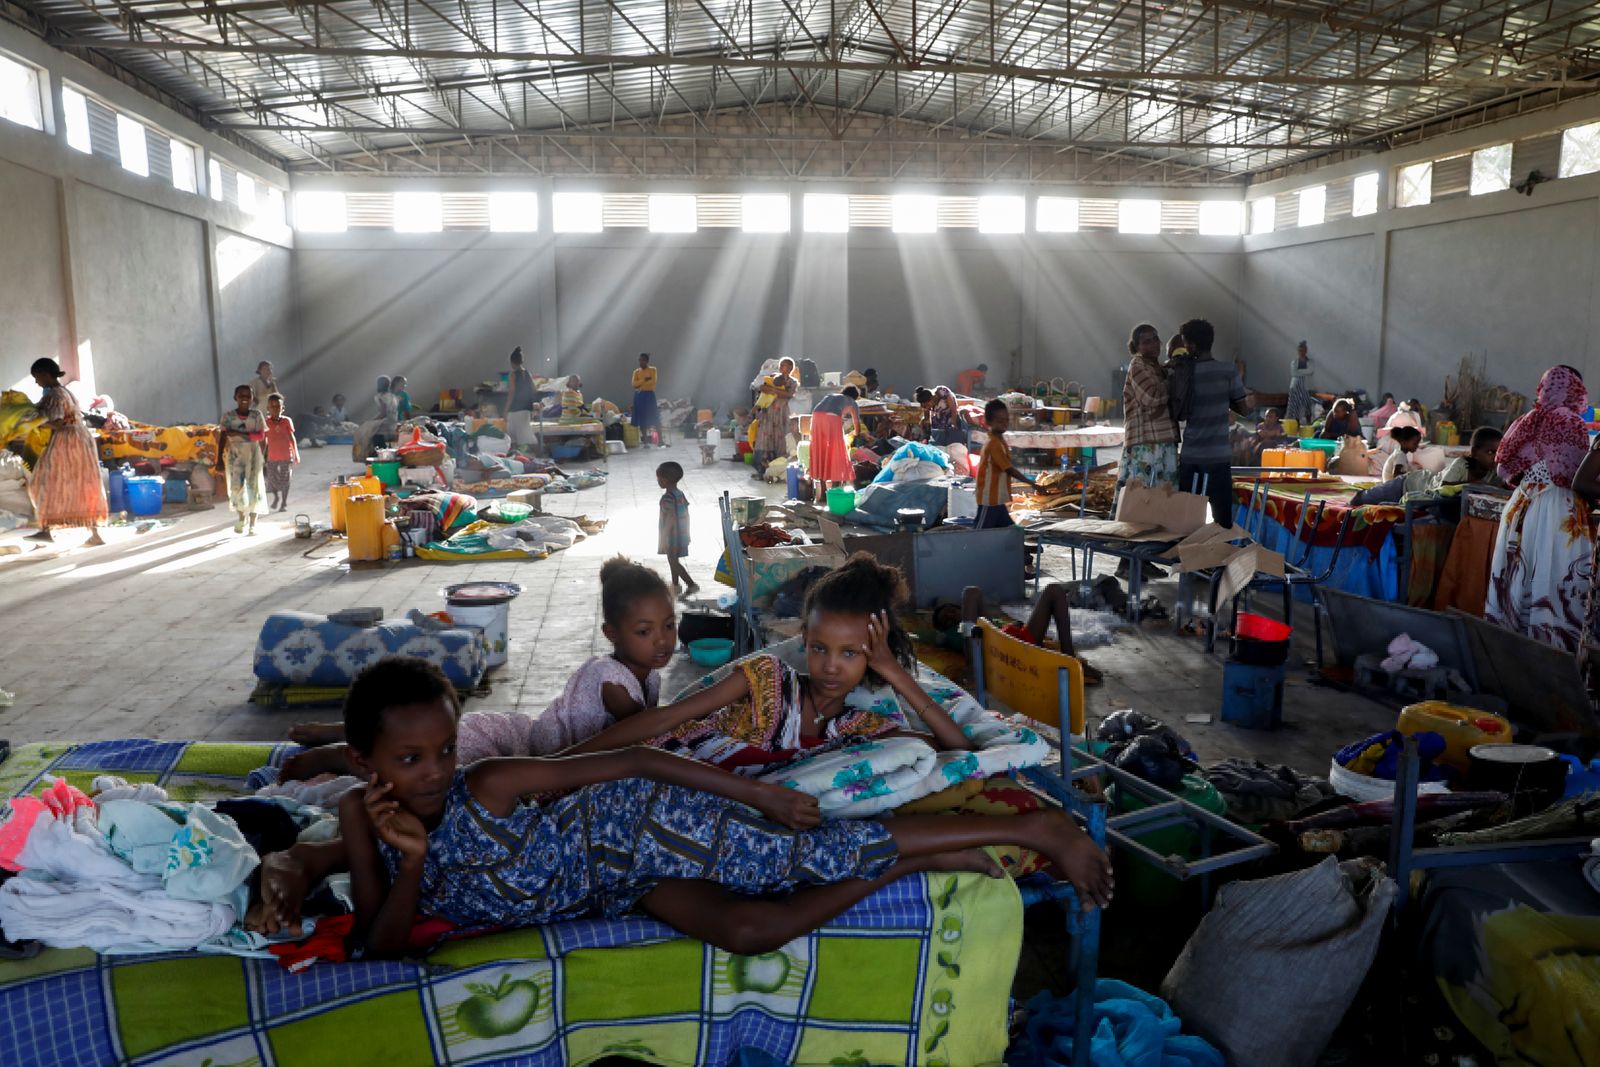 نازحون في حرم جامعة تحوّلت إلى مأوى مؤقت في إقليم تيغراي - 14 مارس 2021 - REUTERS